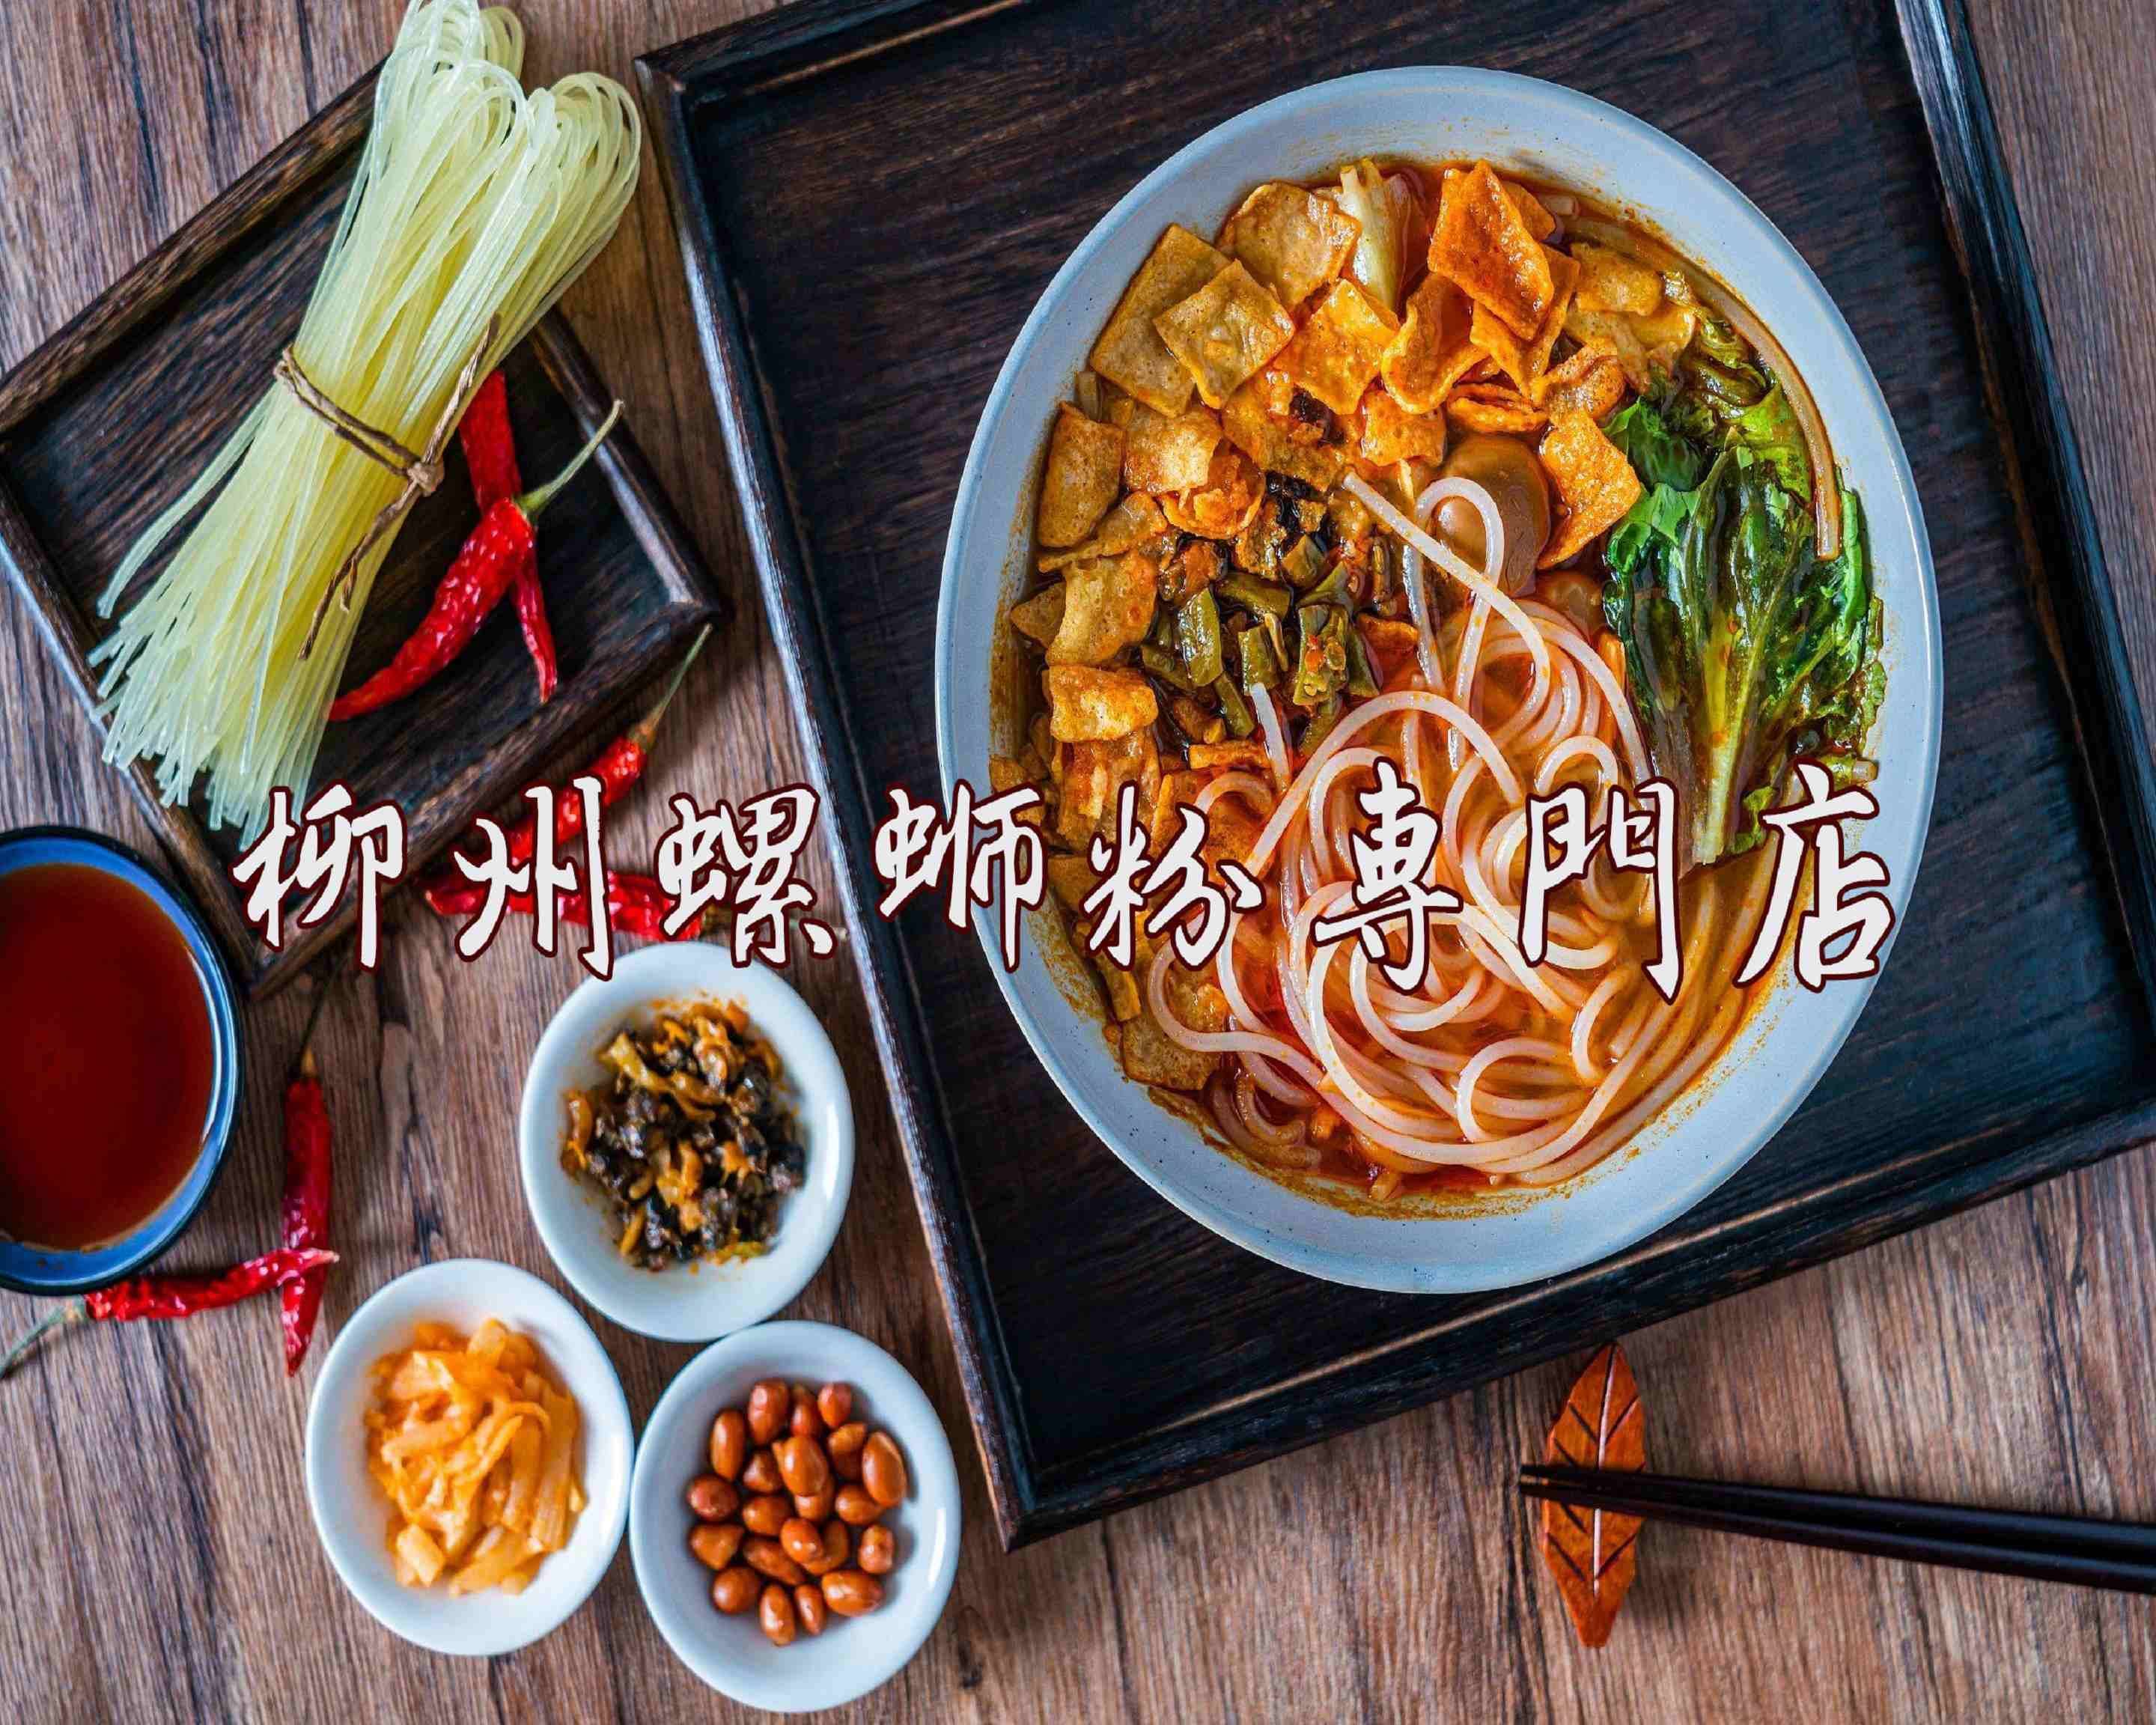 柳州螺蛳粉 ルオスーフェン LIUZHOU noodlesのメニューを配達 